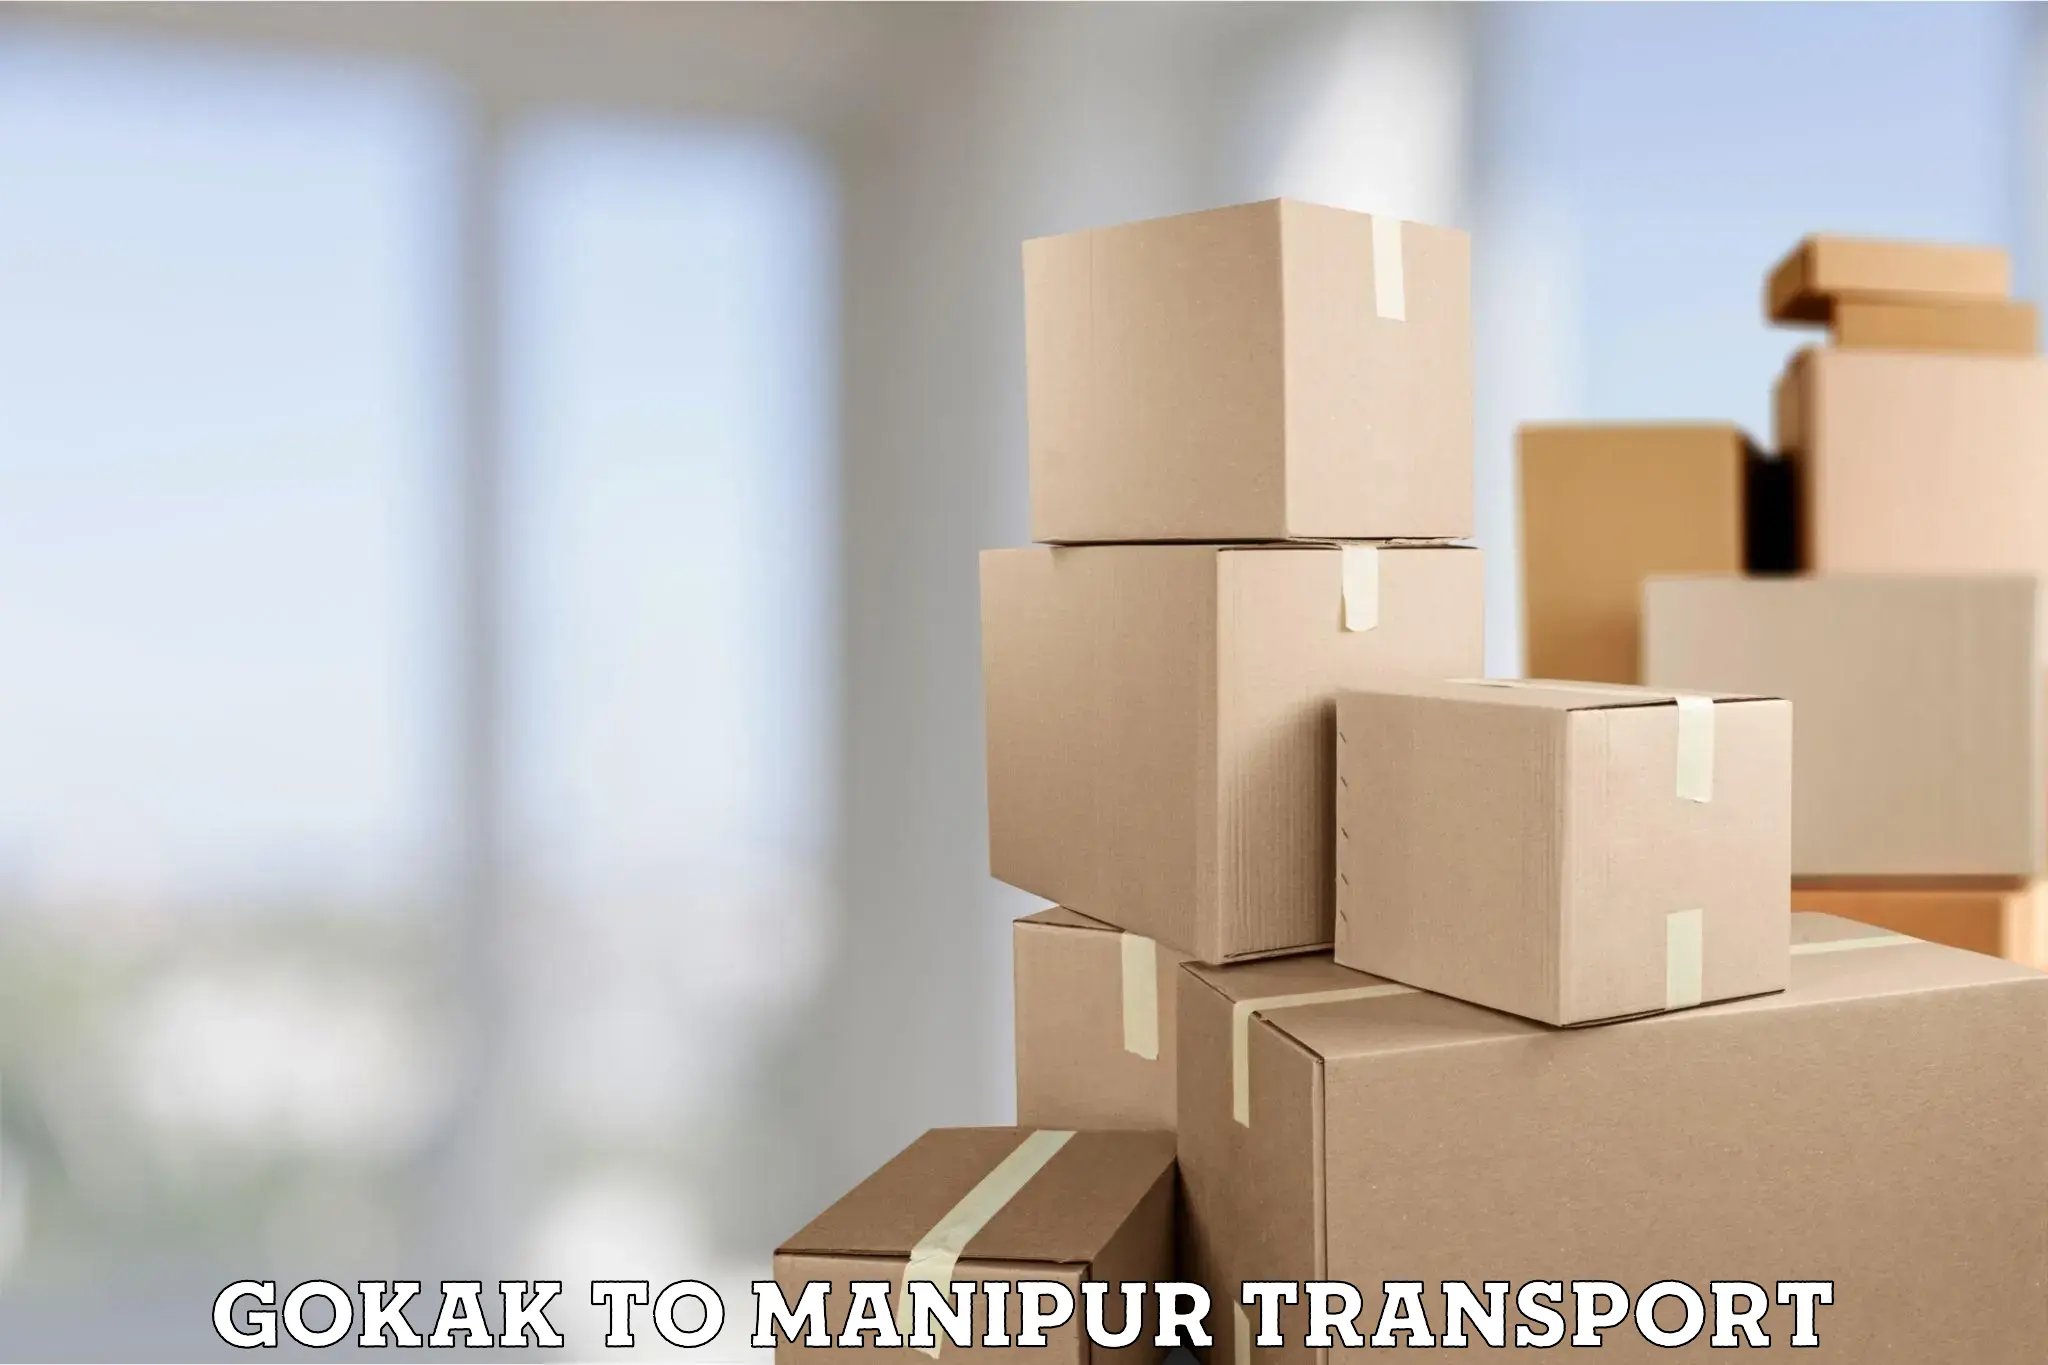 Furniture transport service Gokak to Manipur